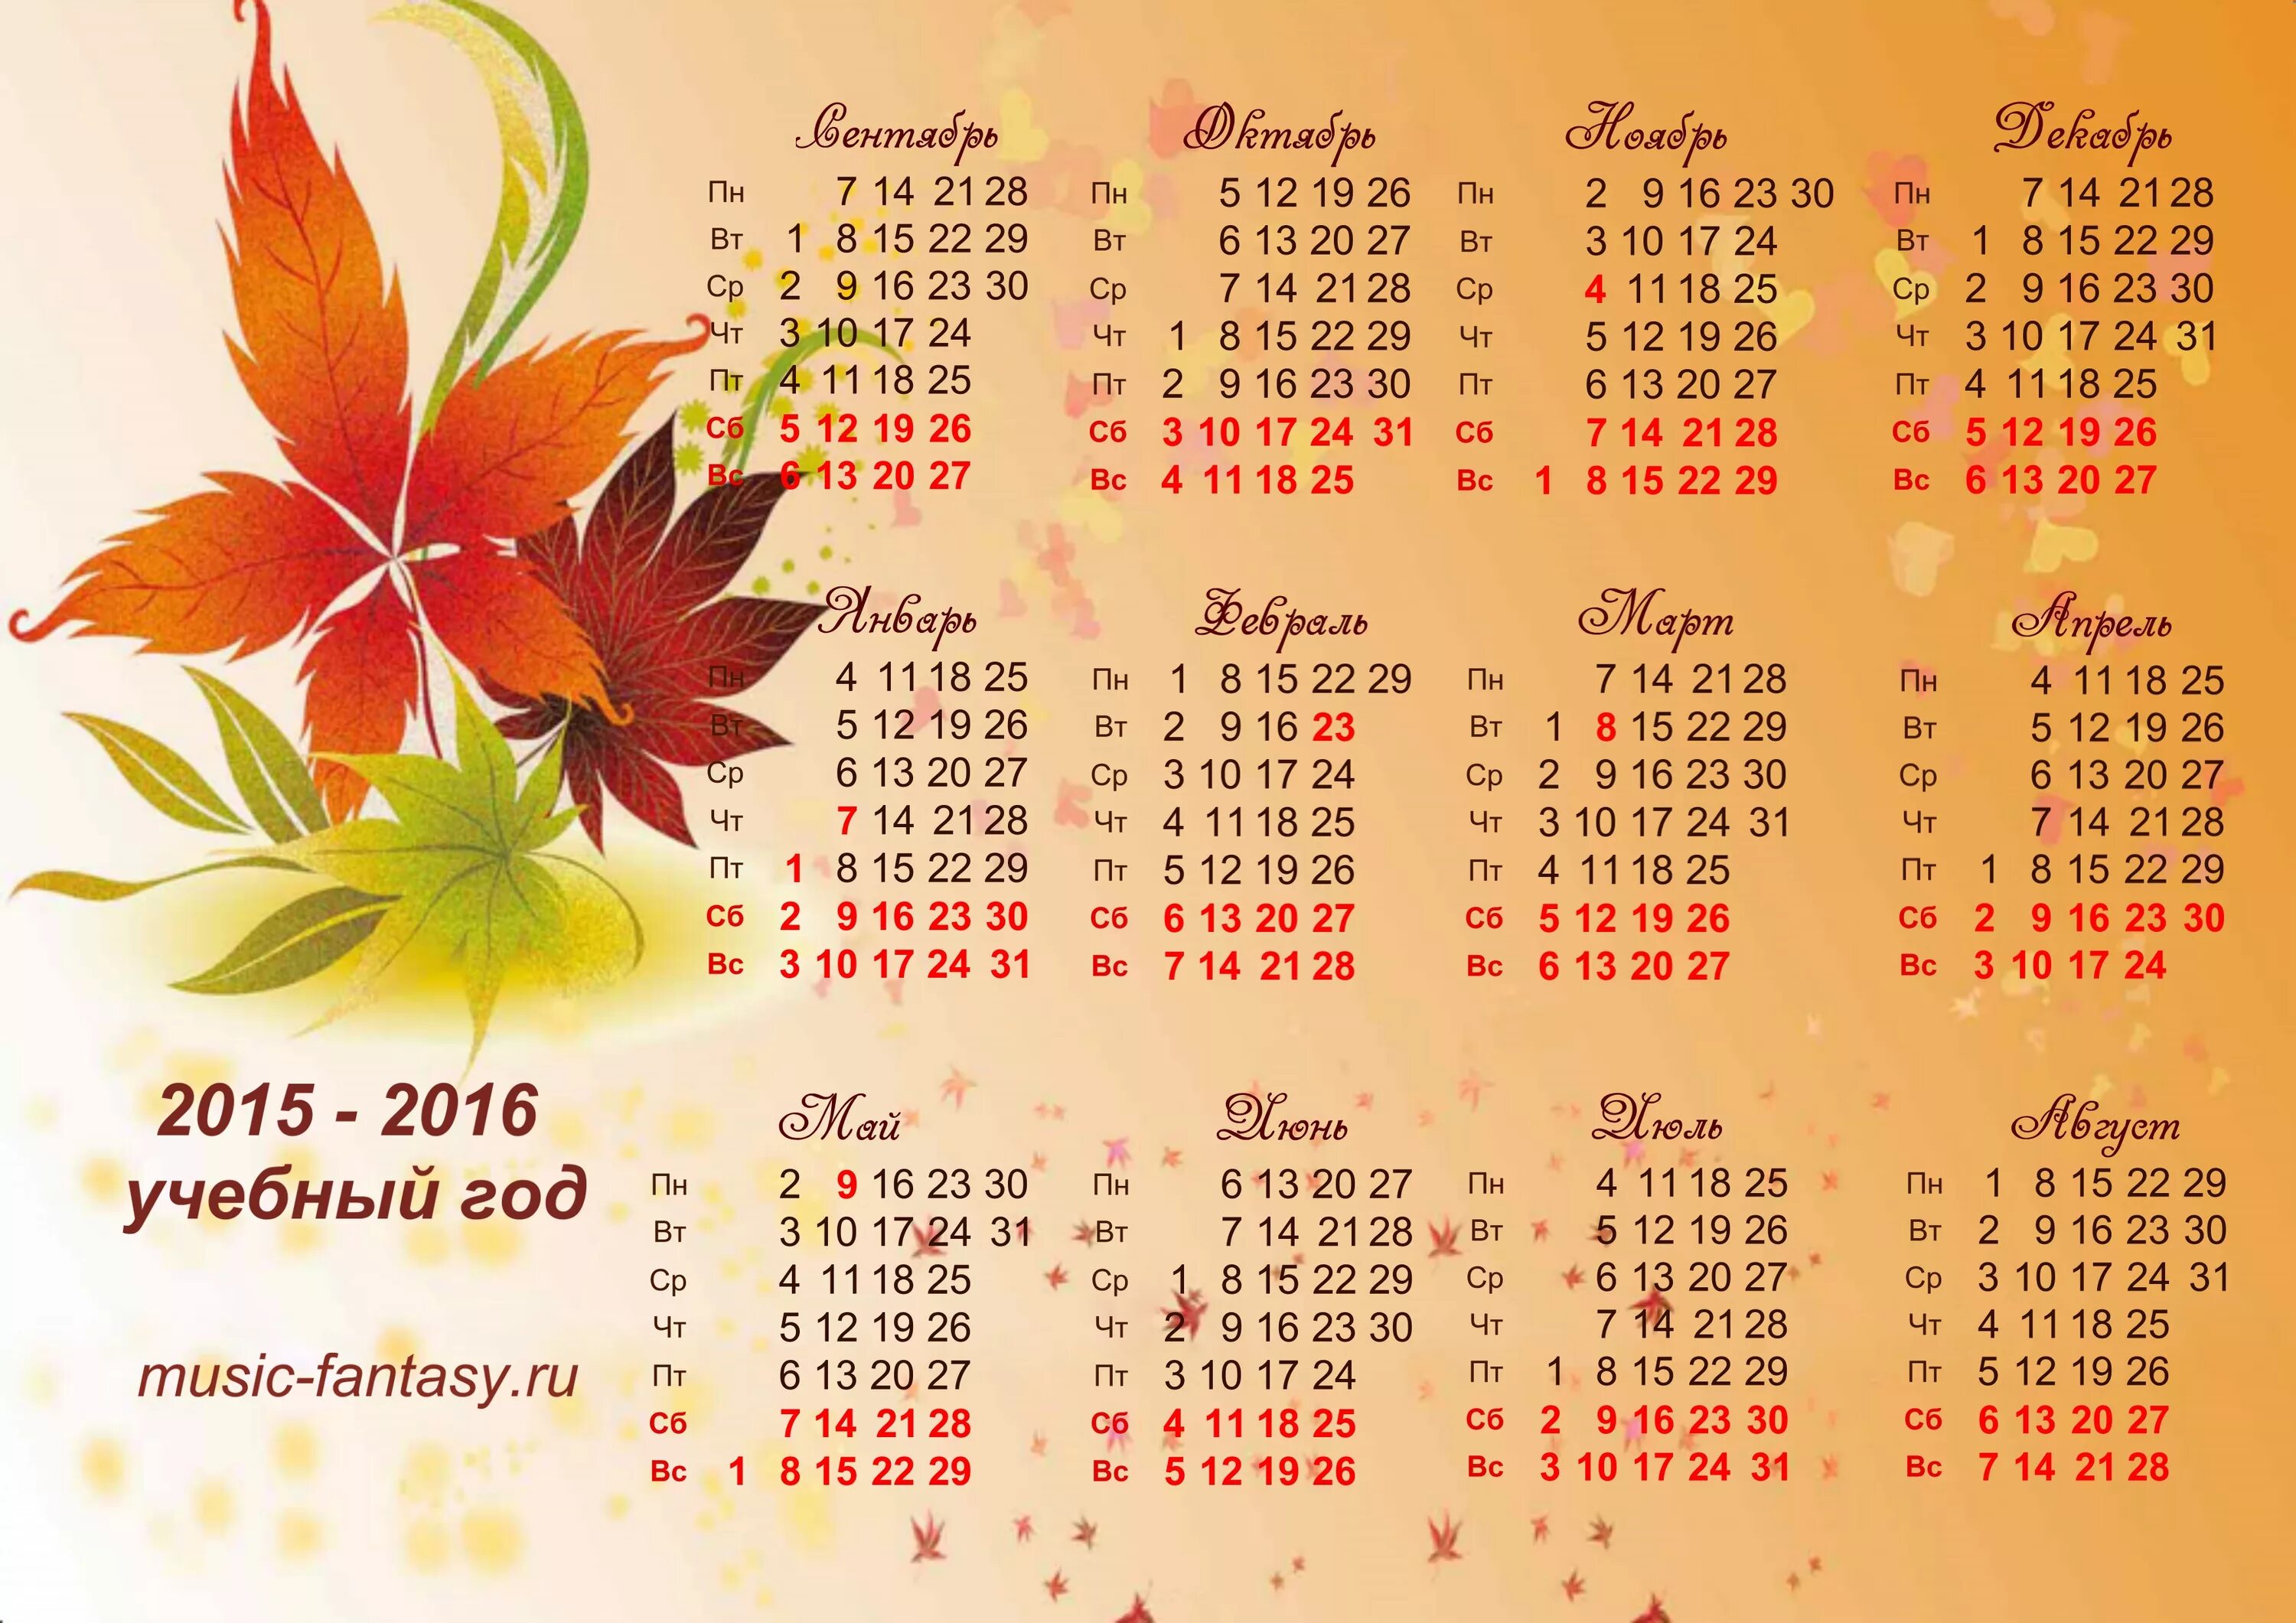 2015. Календарь. Календарь 2015 и 2016 годов. Календарь 2015-2016 учебный год. Календарь 2015-2016 года по месяцам.